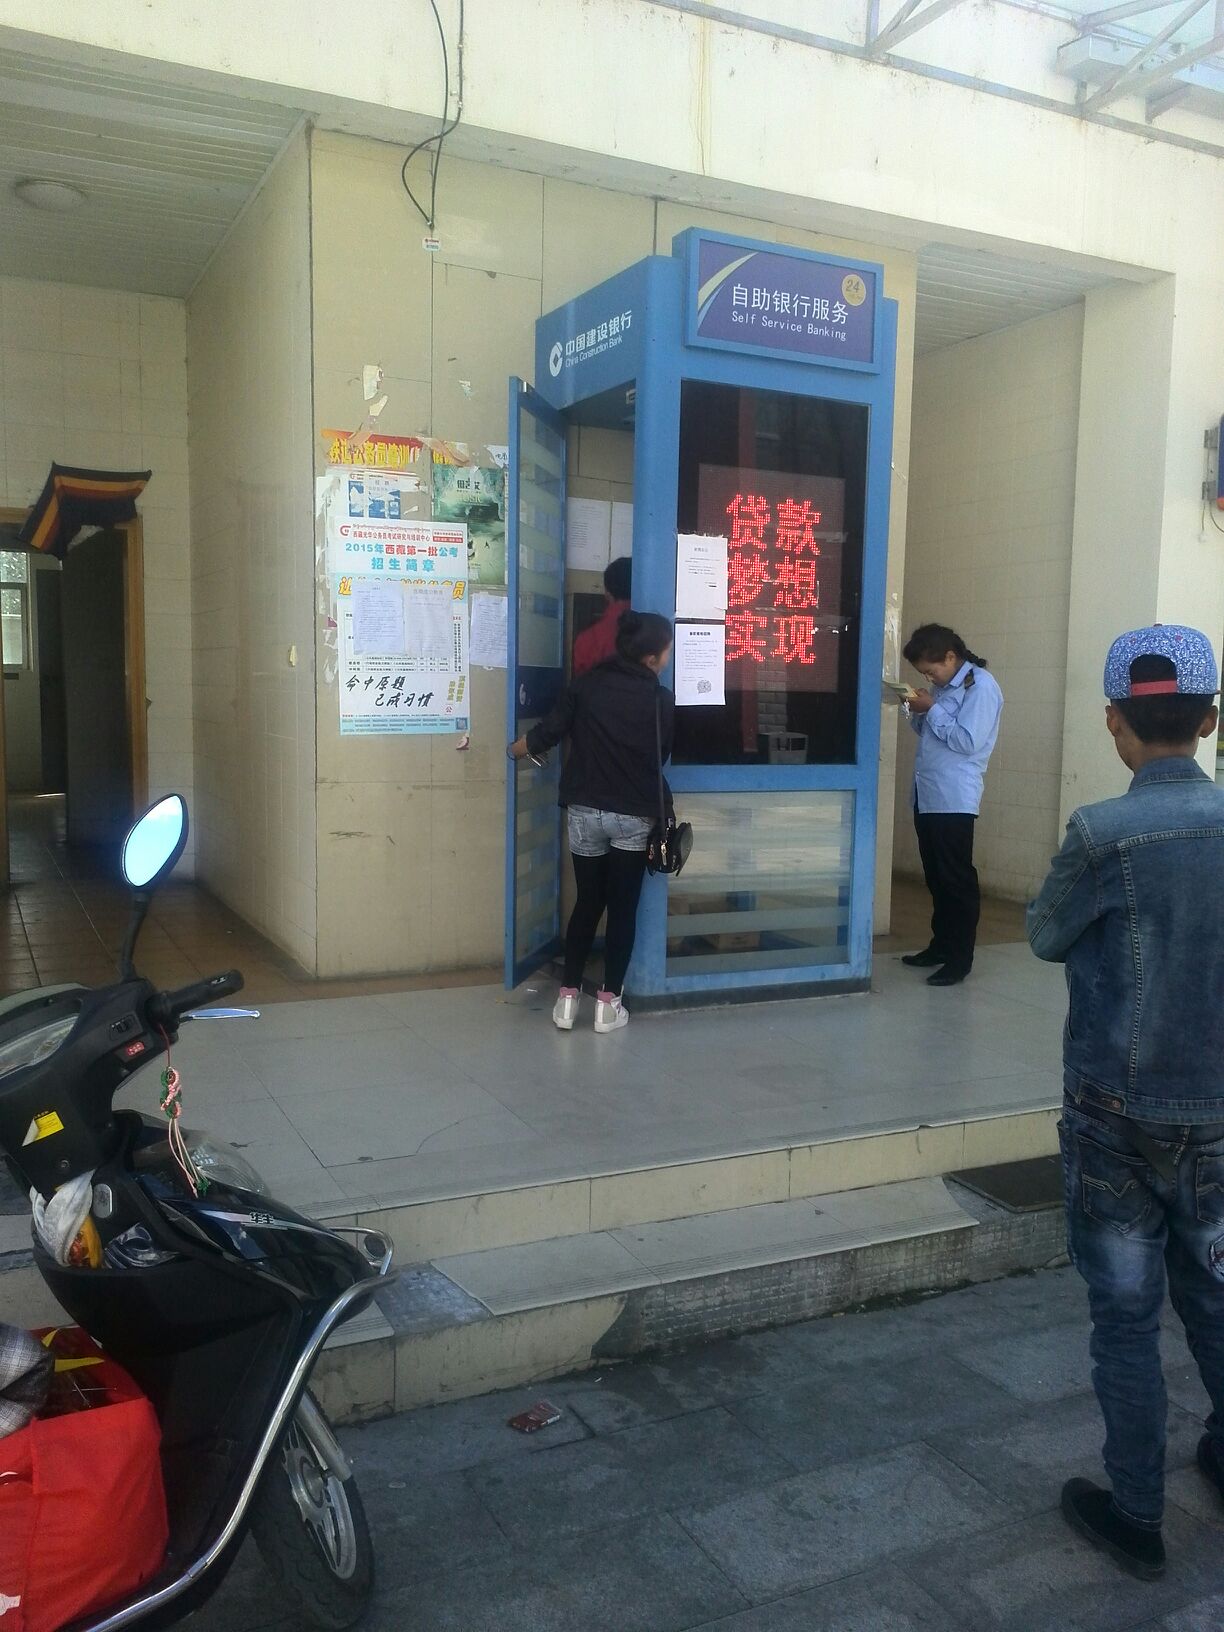 中國建設銀行ATM(藏大東路)